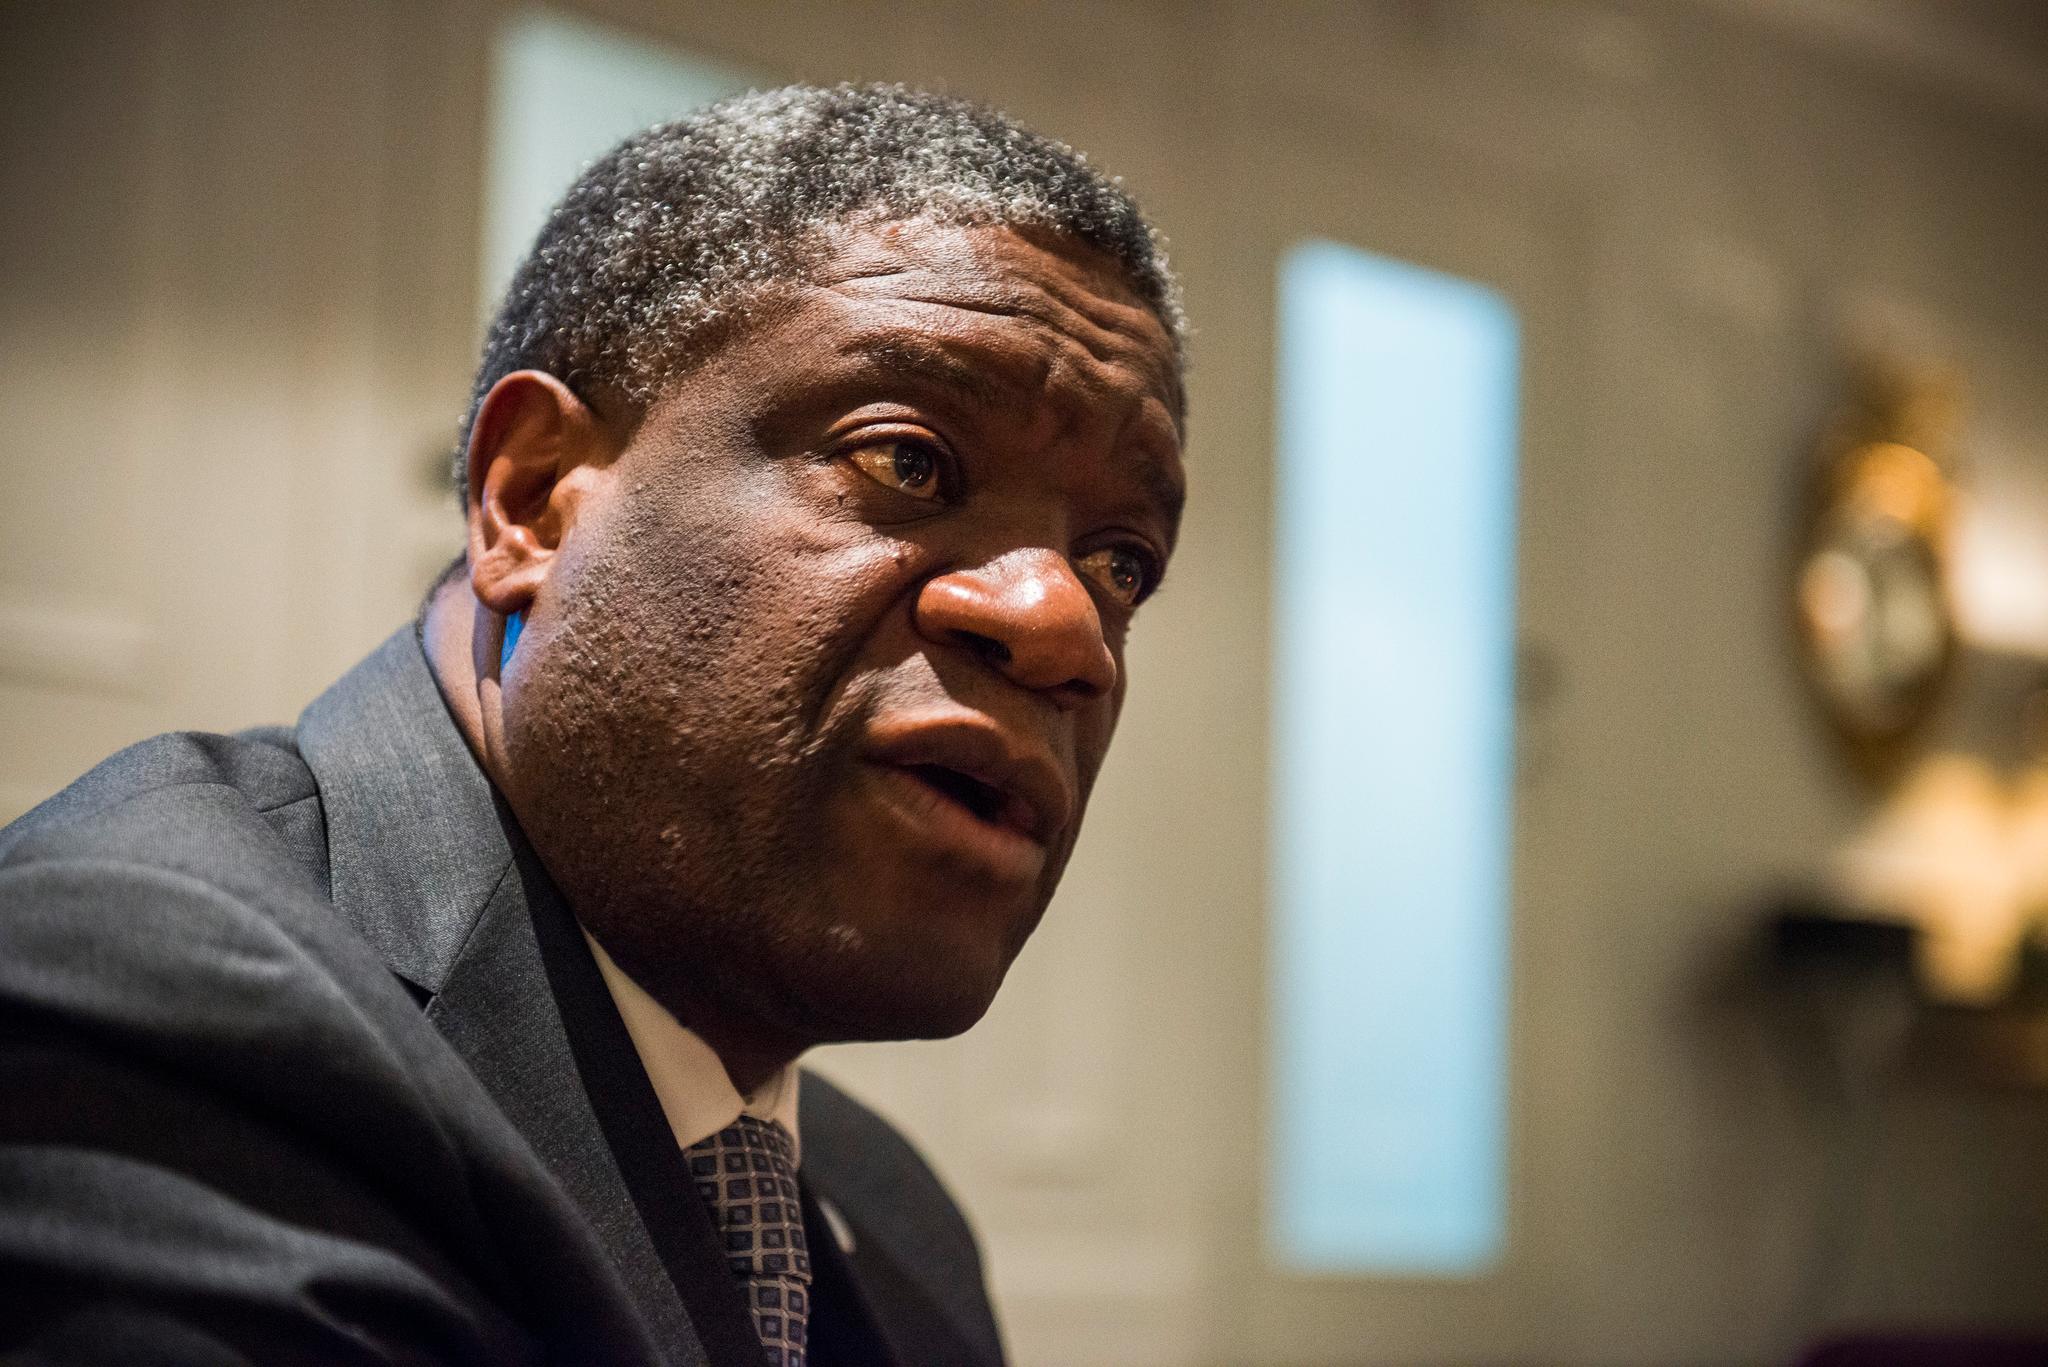 Denis Mukwege i Oslo i 2013 for å delta på en konferanse i regi av Norad.